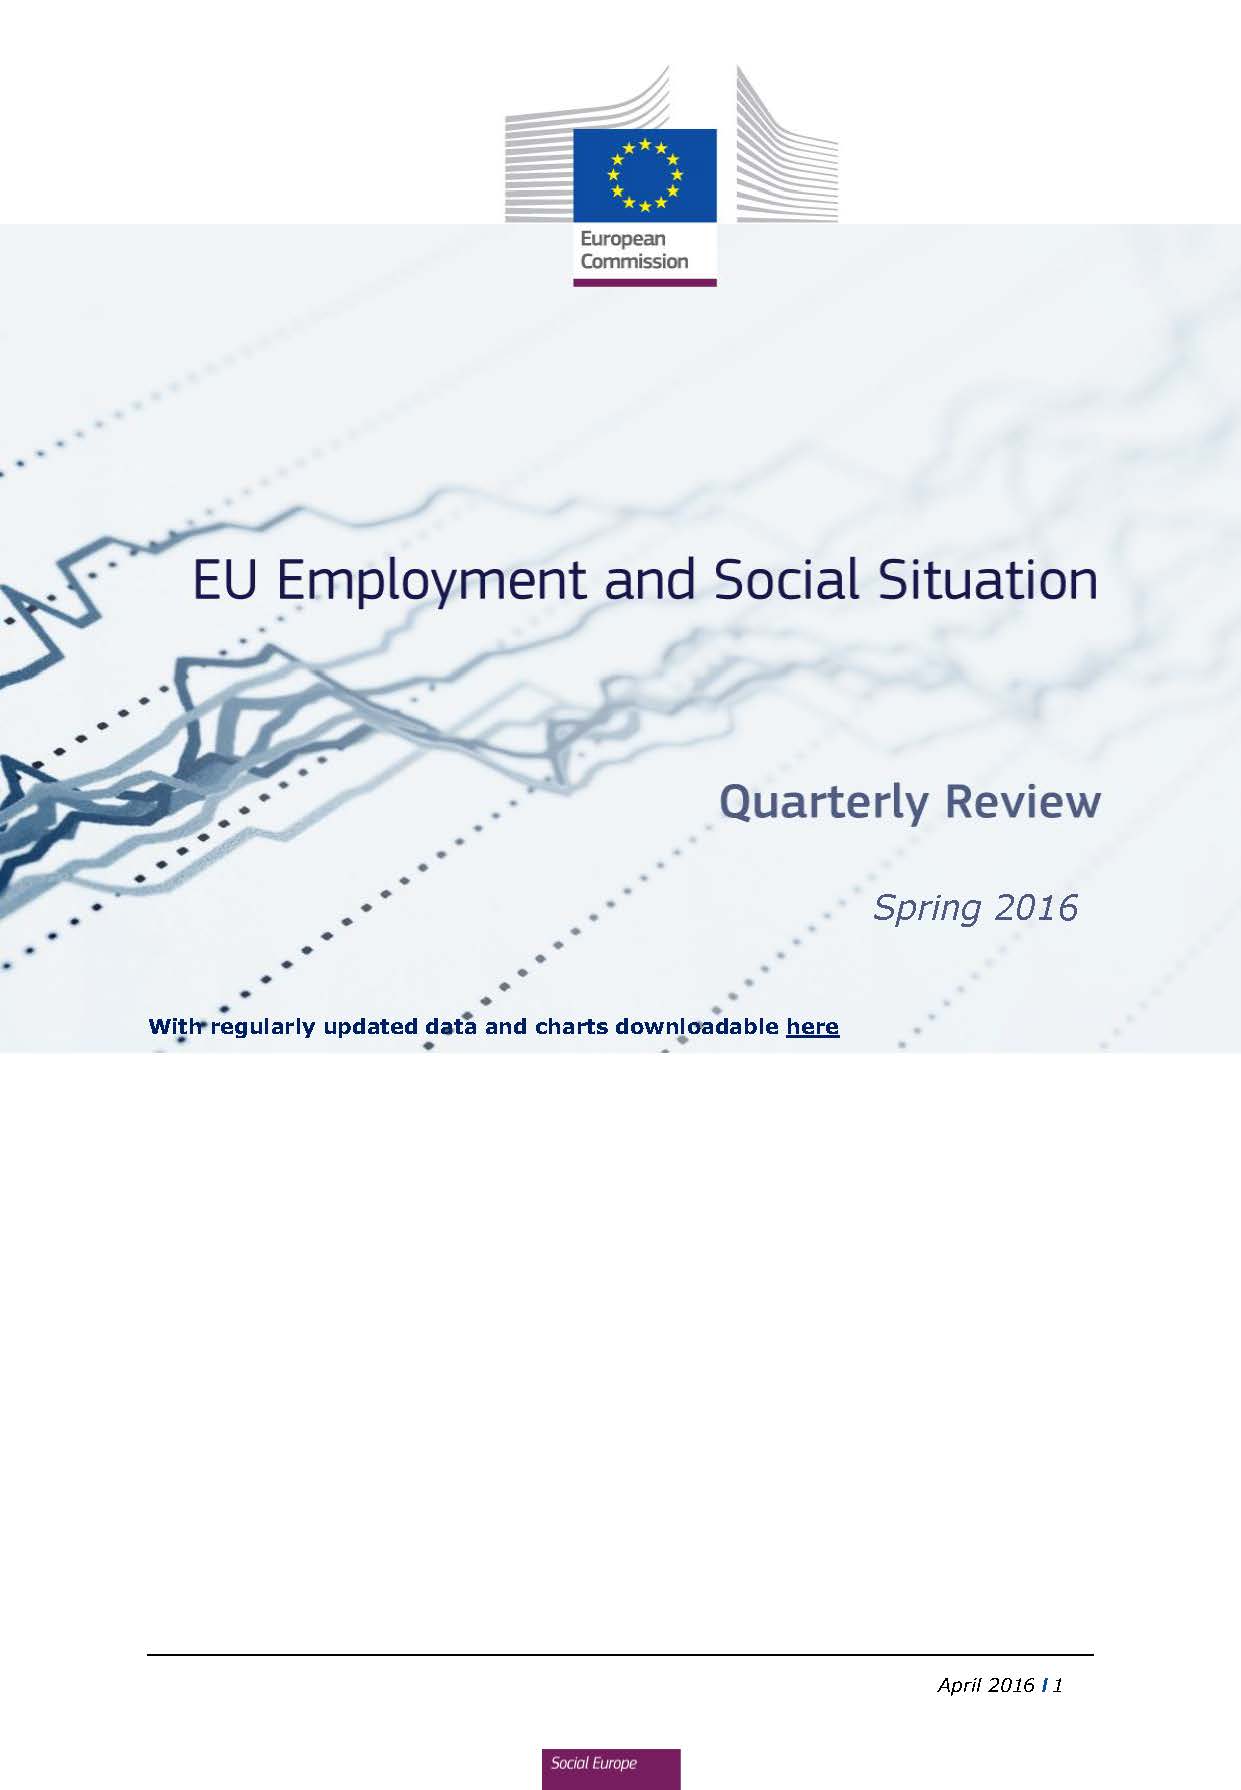 EU Employment and Social Situation - Quarterly Review – Spring 2016